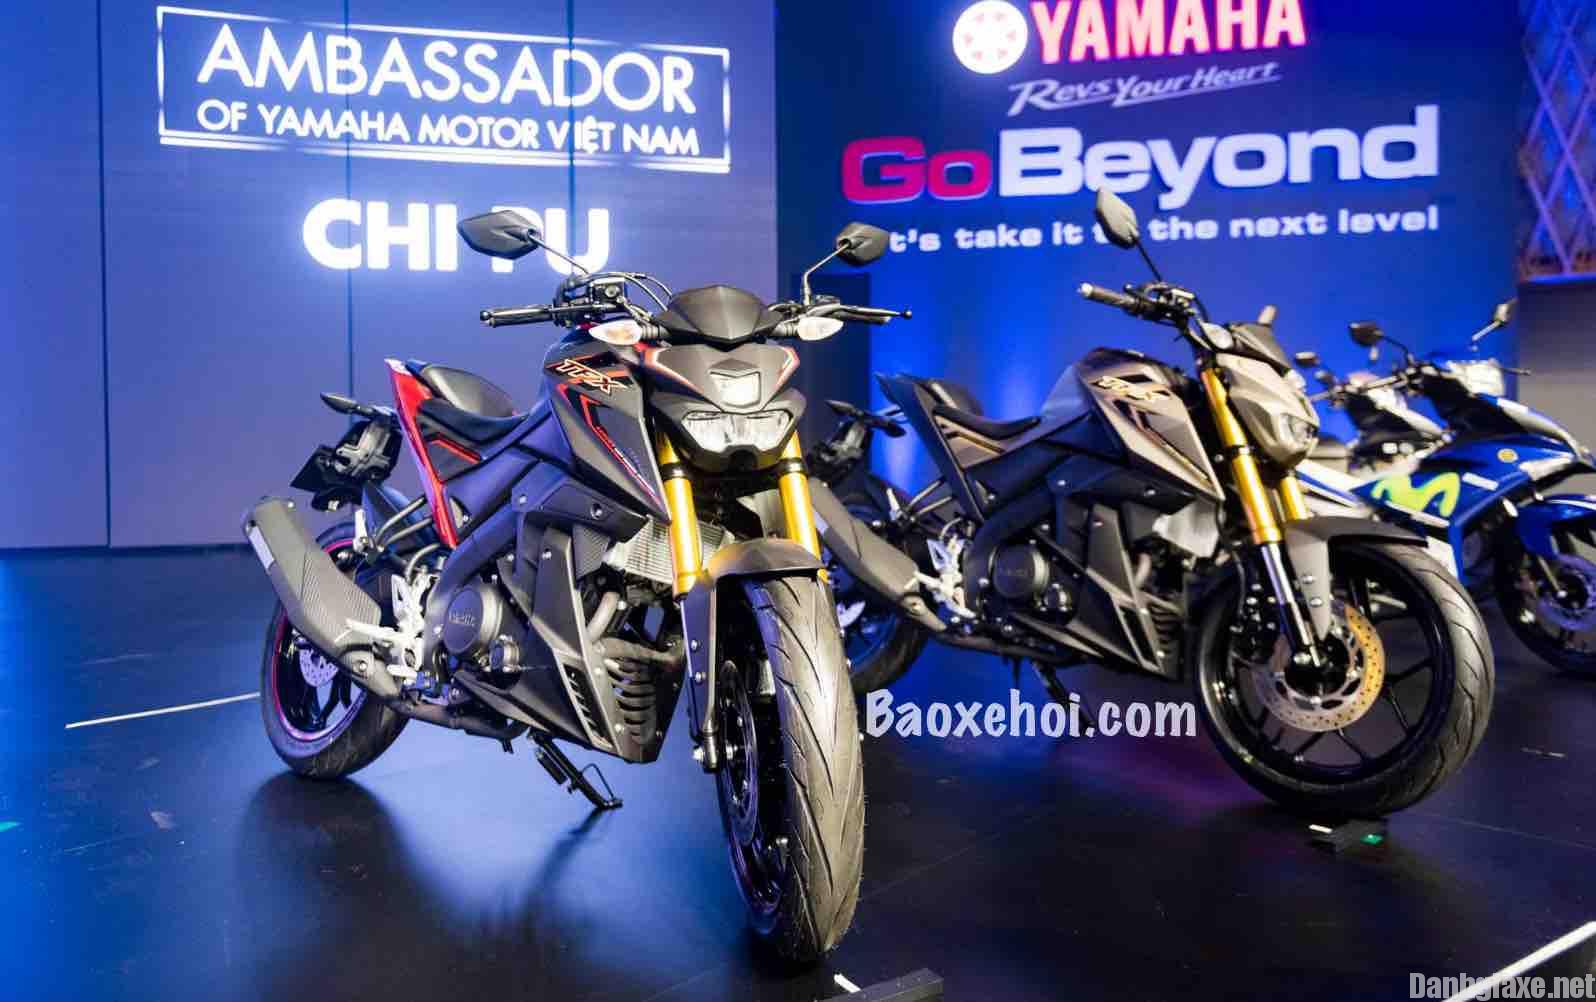 Yamaha TFX150 giá bao nhiêu? Đánh giá xe TFX 150cc của Yamaha - Danhgiaxe